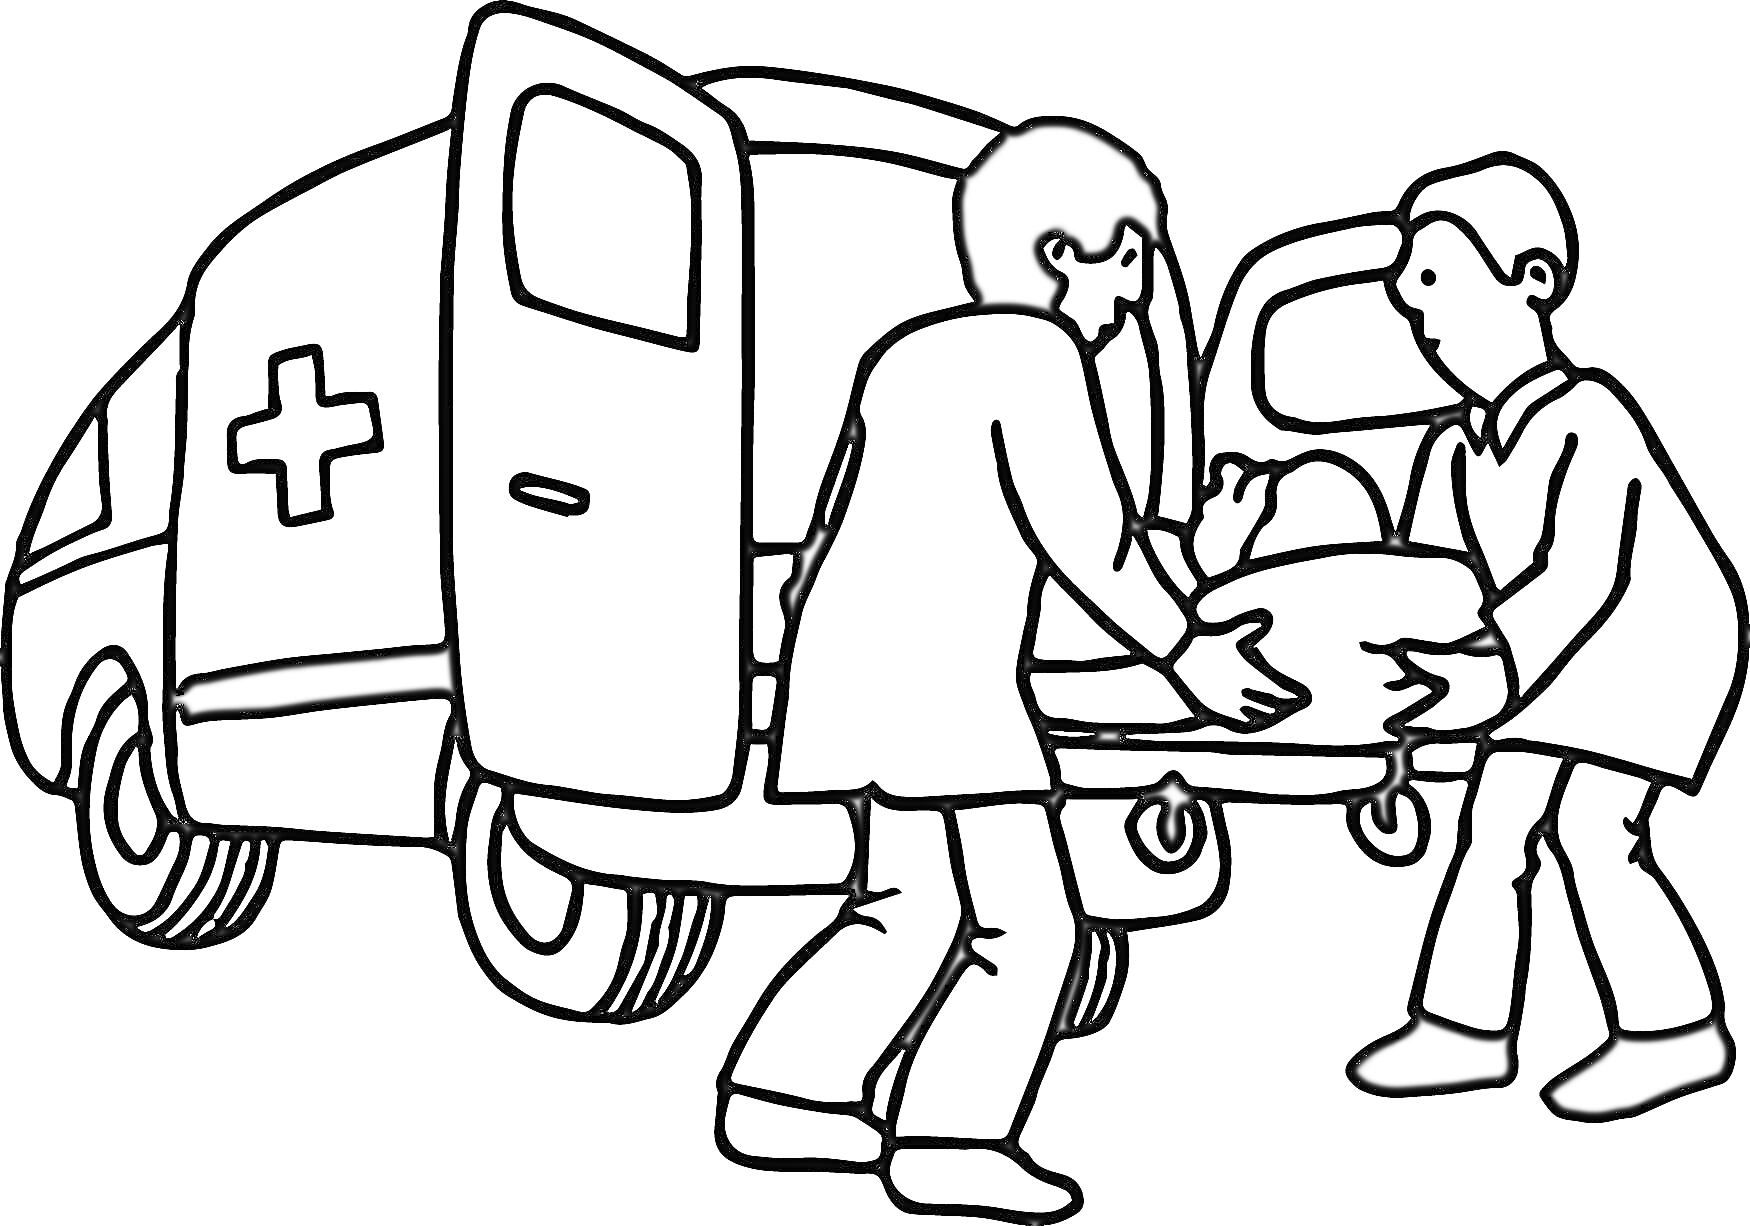 Раскраска Медицинские работники несут пациента на носилках к машине скорой помощи